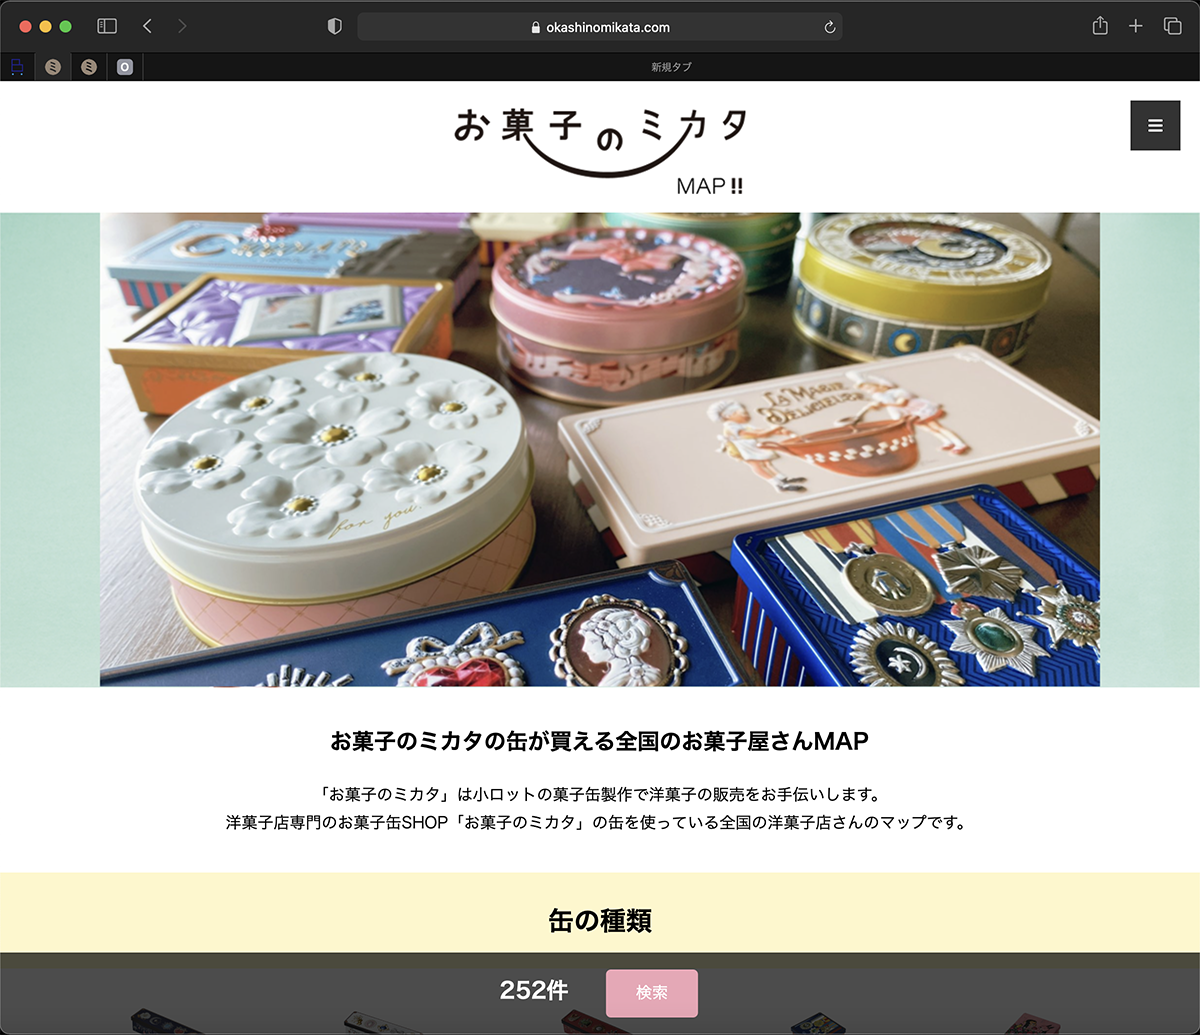 お菓子缶好きやコレクター向け「お菓子のミカタMAP!!」　
缶取り扱い洋菓子店の検索サービスサイトを開設